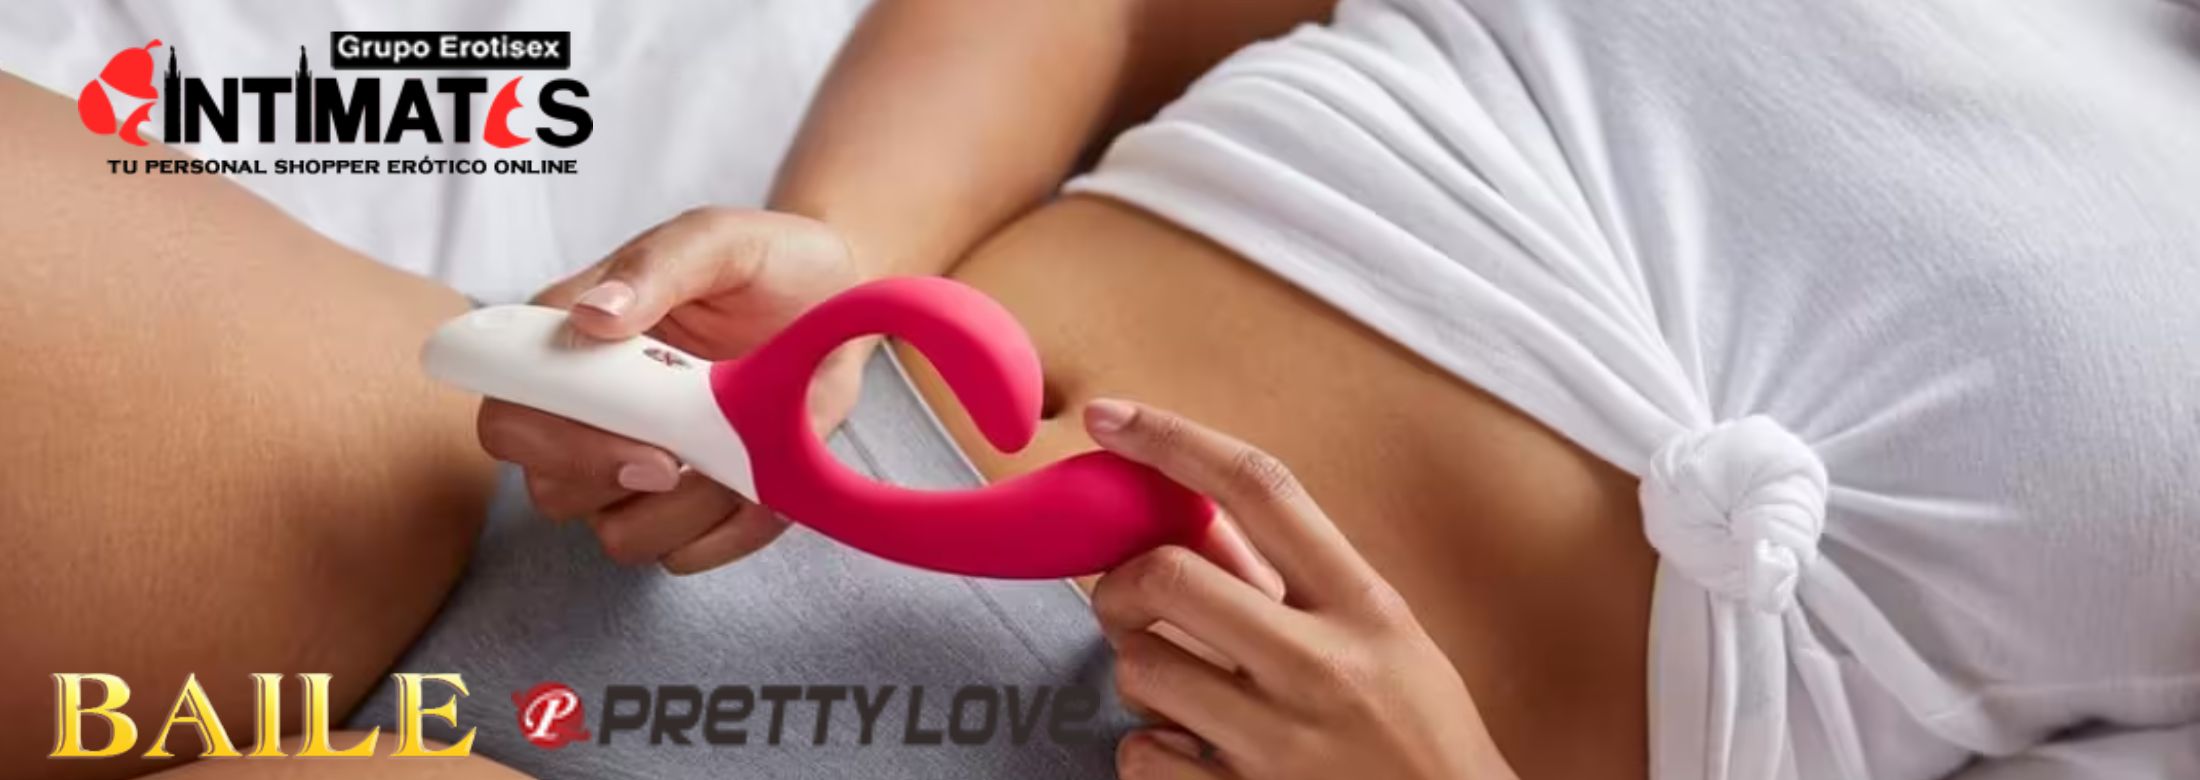 Pretty Love de Liaoyang Baile Health Care Product establecida en 1993, es un fabricante especializado en los juguetes sexuales y productos para adultos en intimates.es